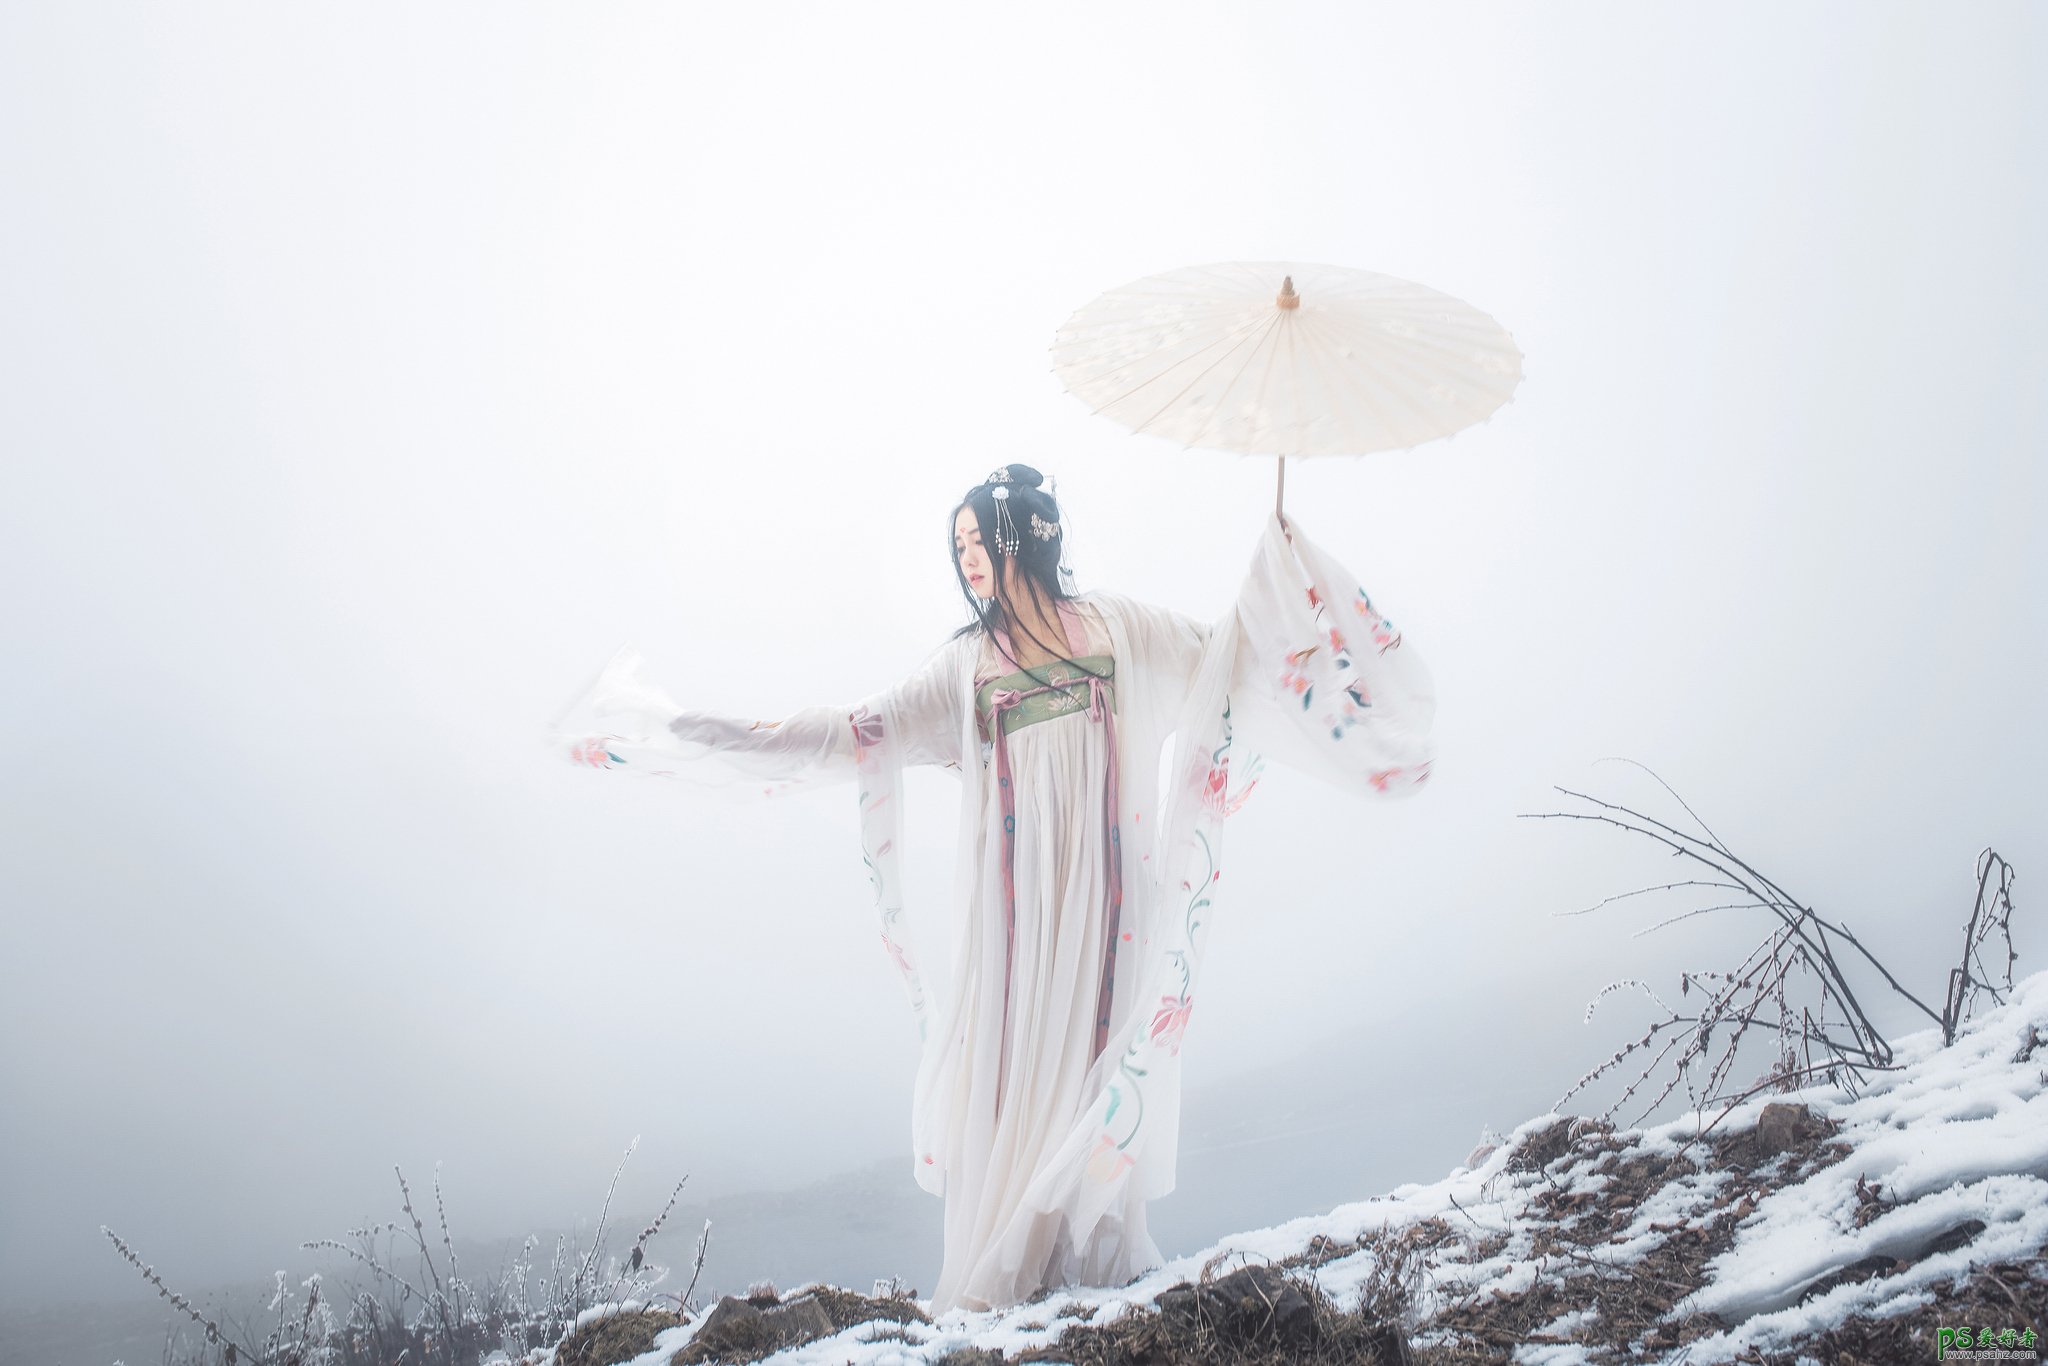 亚洲青色古装美女手拿纸伞湖边自拍湿身写真高清图片，湿身艺术照